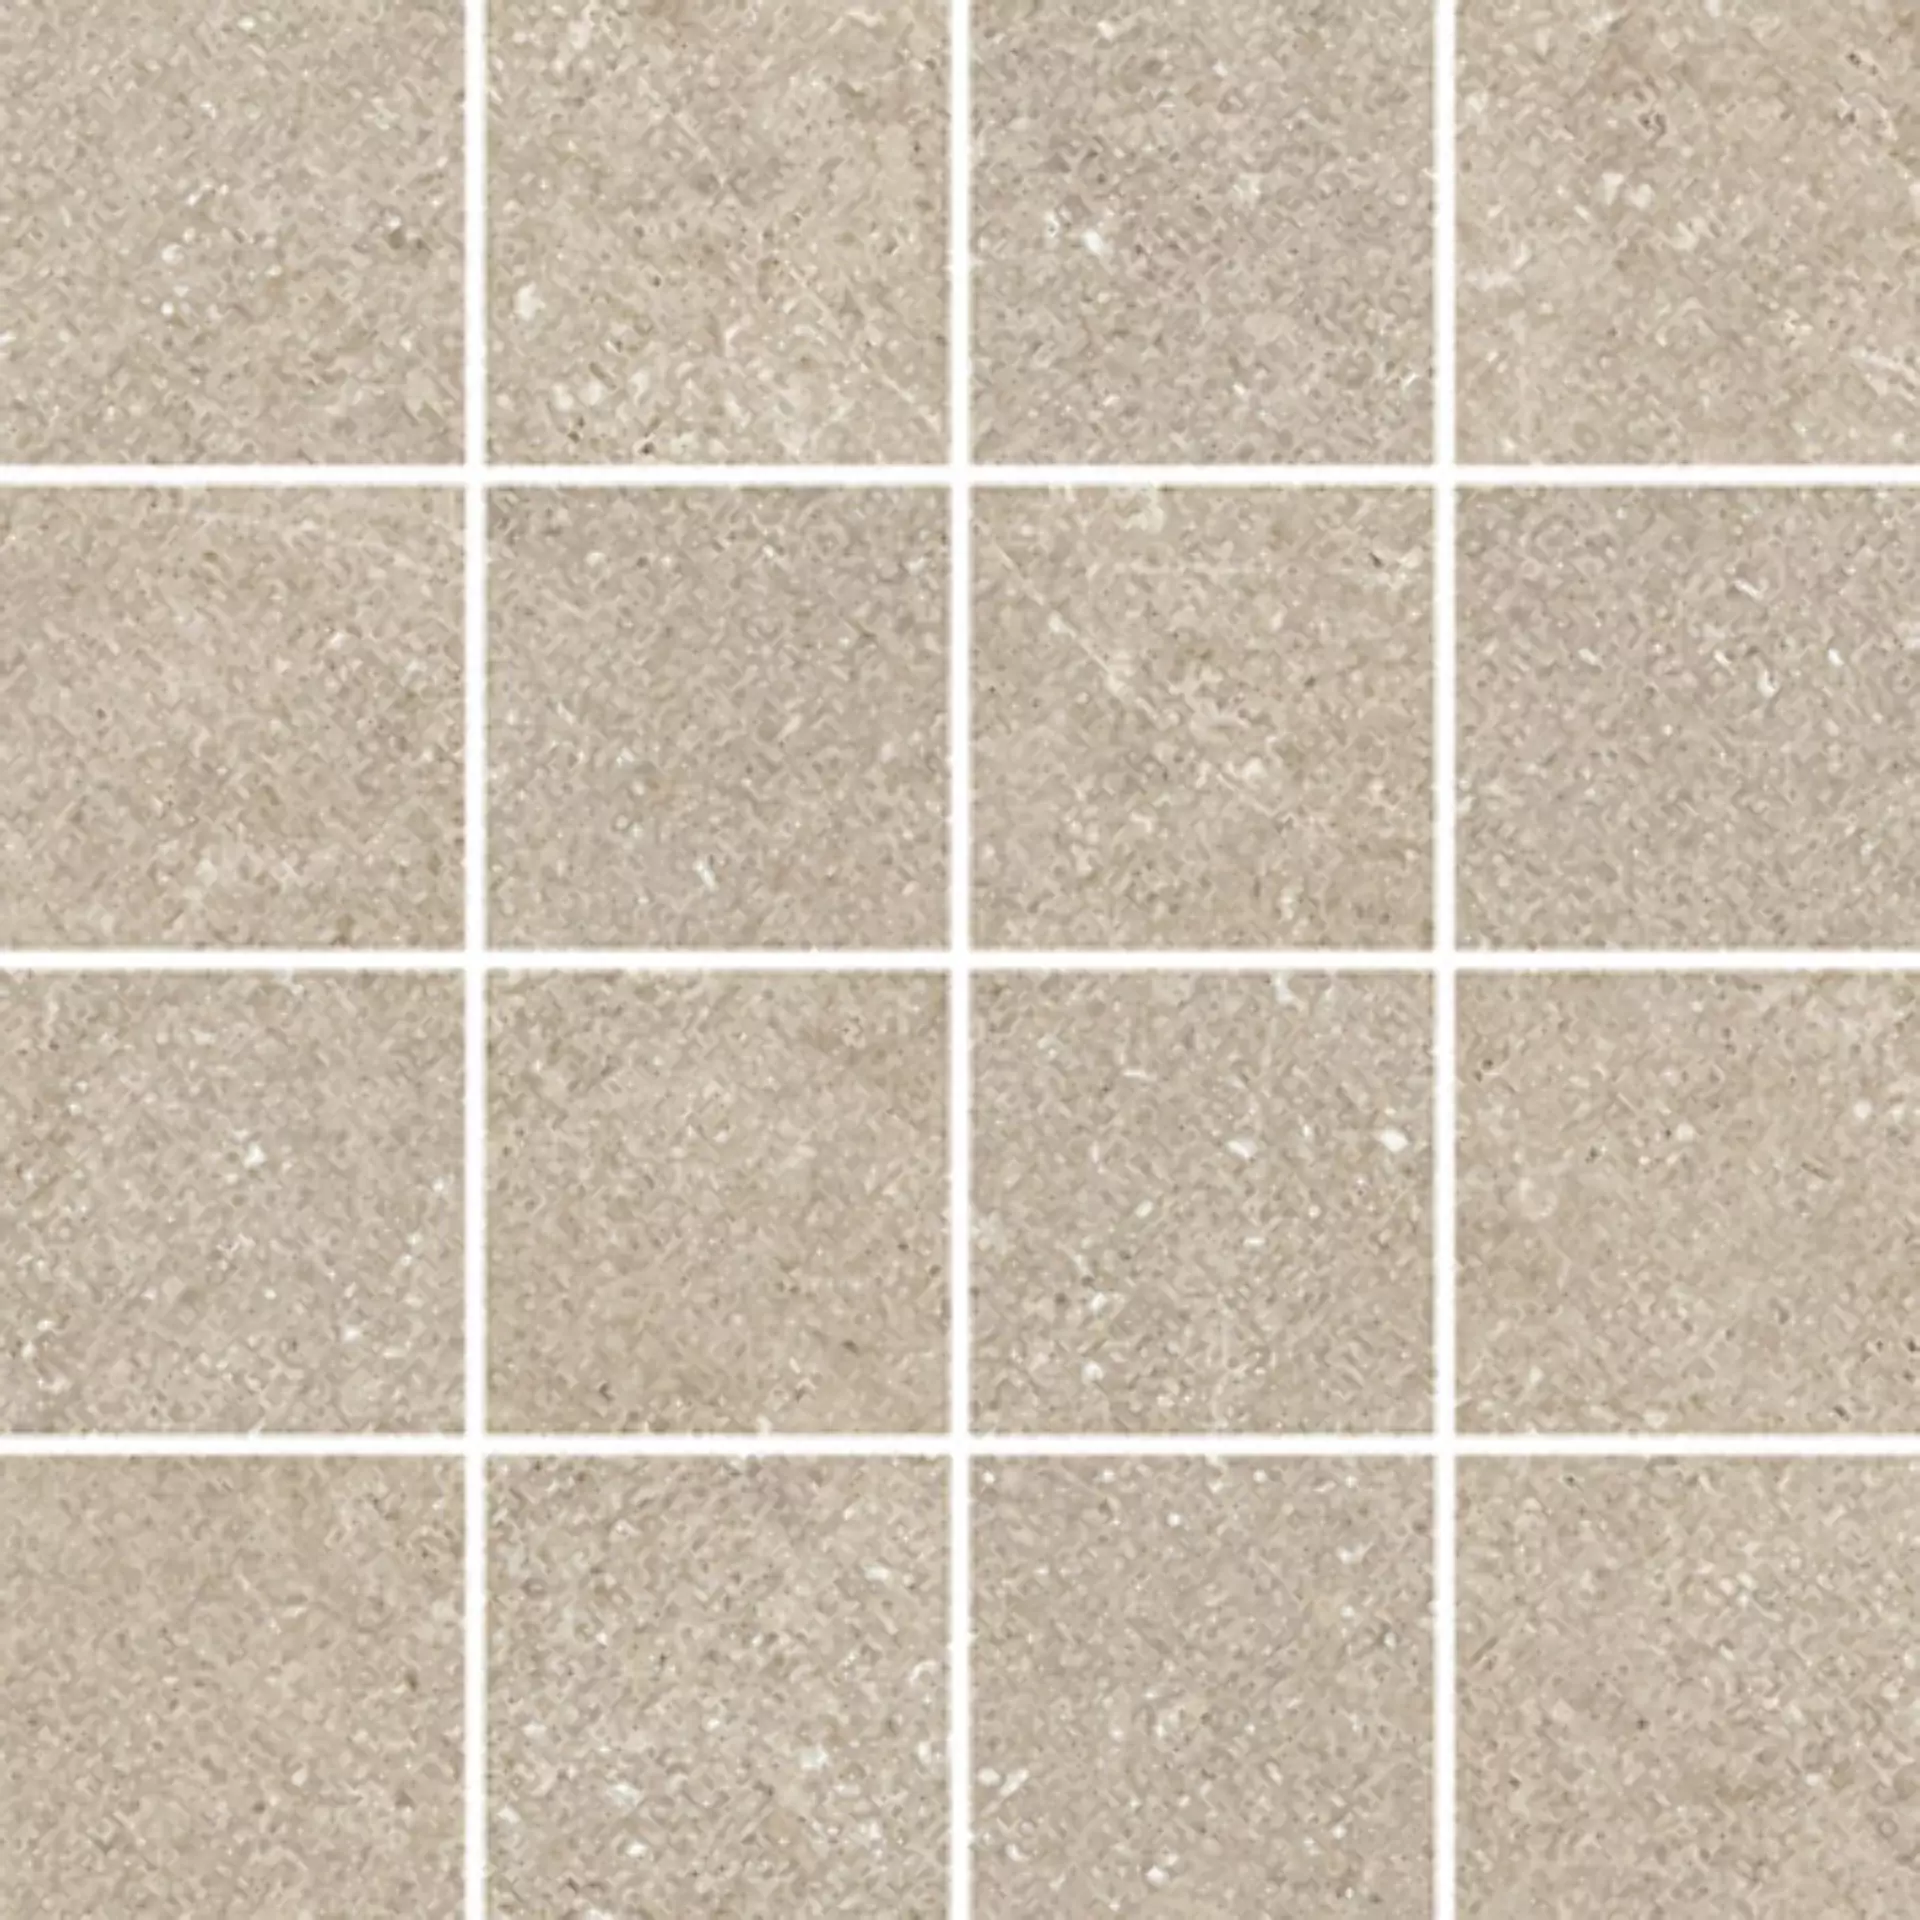 Villeroy & Boch Lucca Sand Matt Mosaic (7,5x7,5) 2013-LS70 7,5x7,5cm rectified 9mm